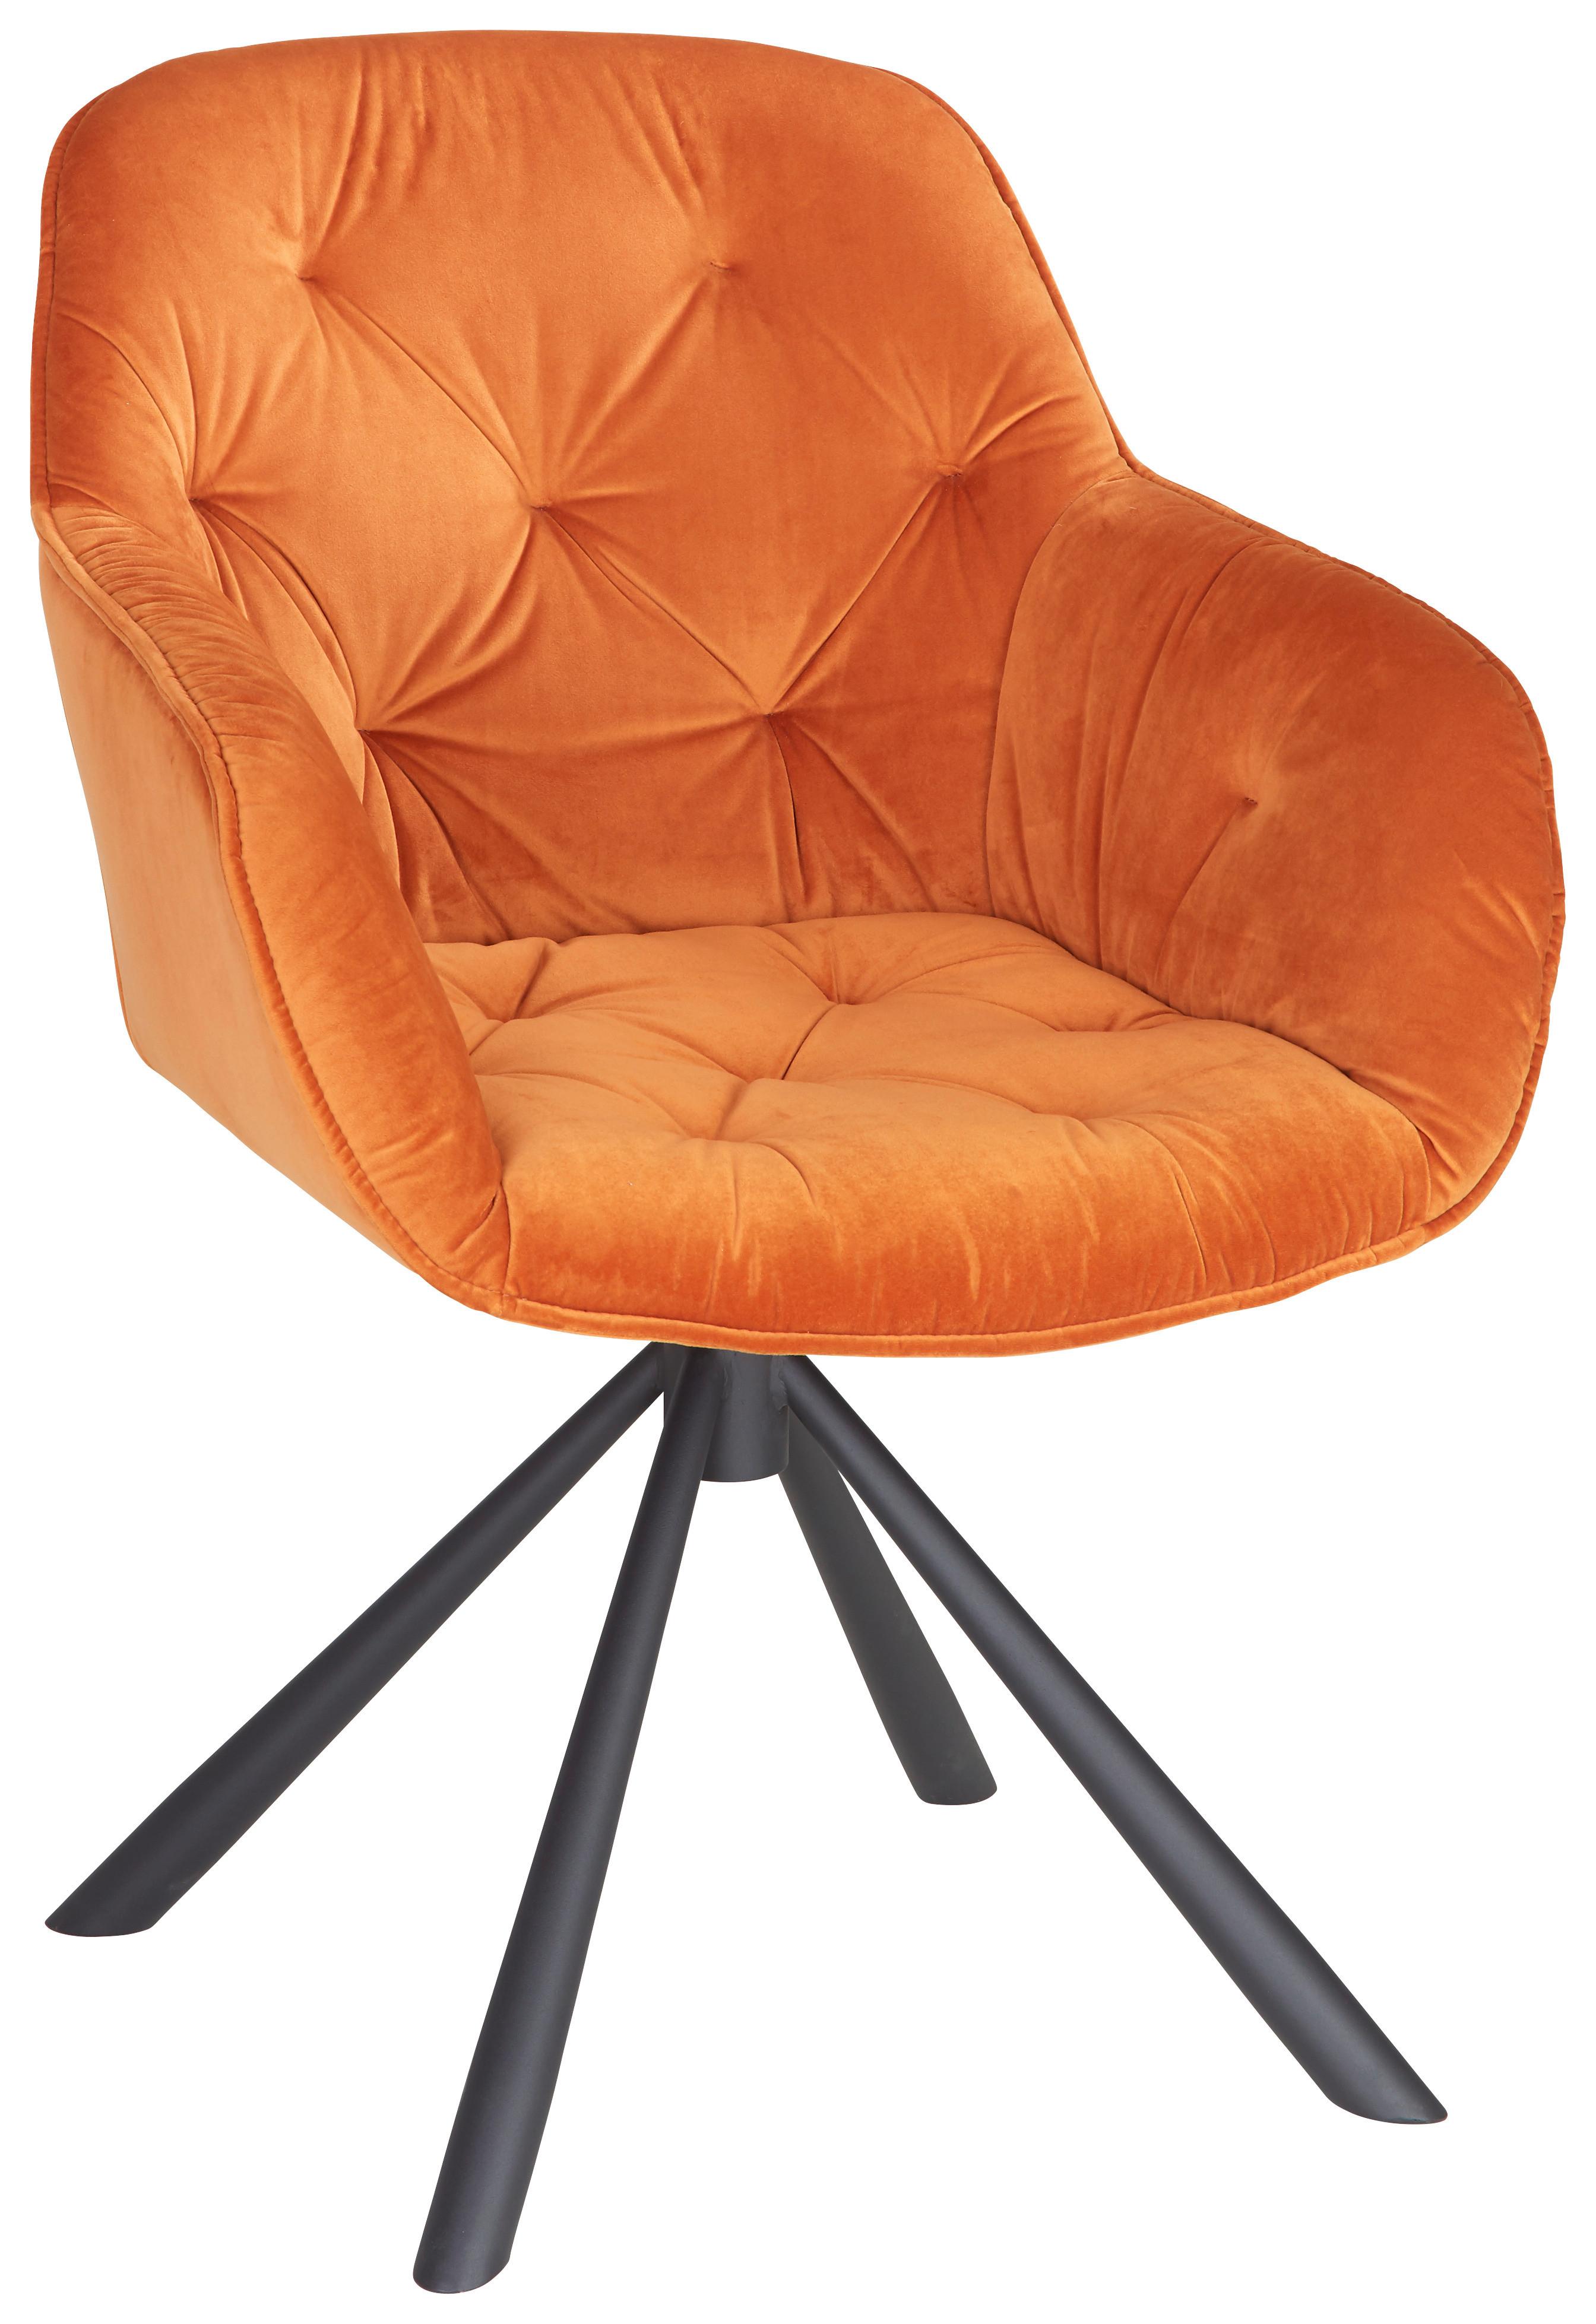 Armlehnstuhl Eileen aus Samt in Orange - Schwarz/Orange, Lifestyle, Textil/Metall (63/86/66cm) - Premium Living